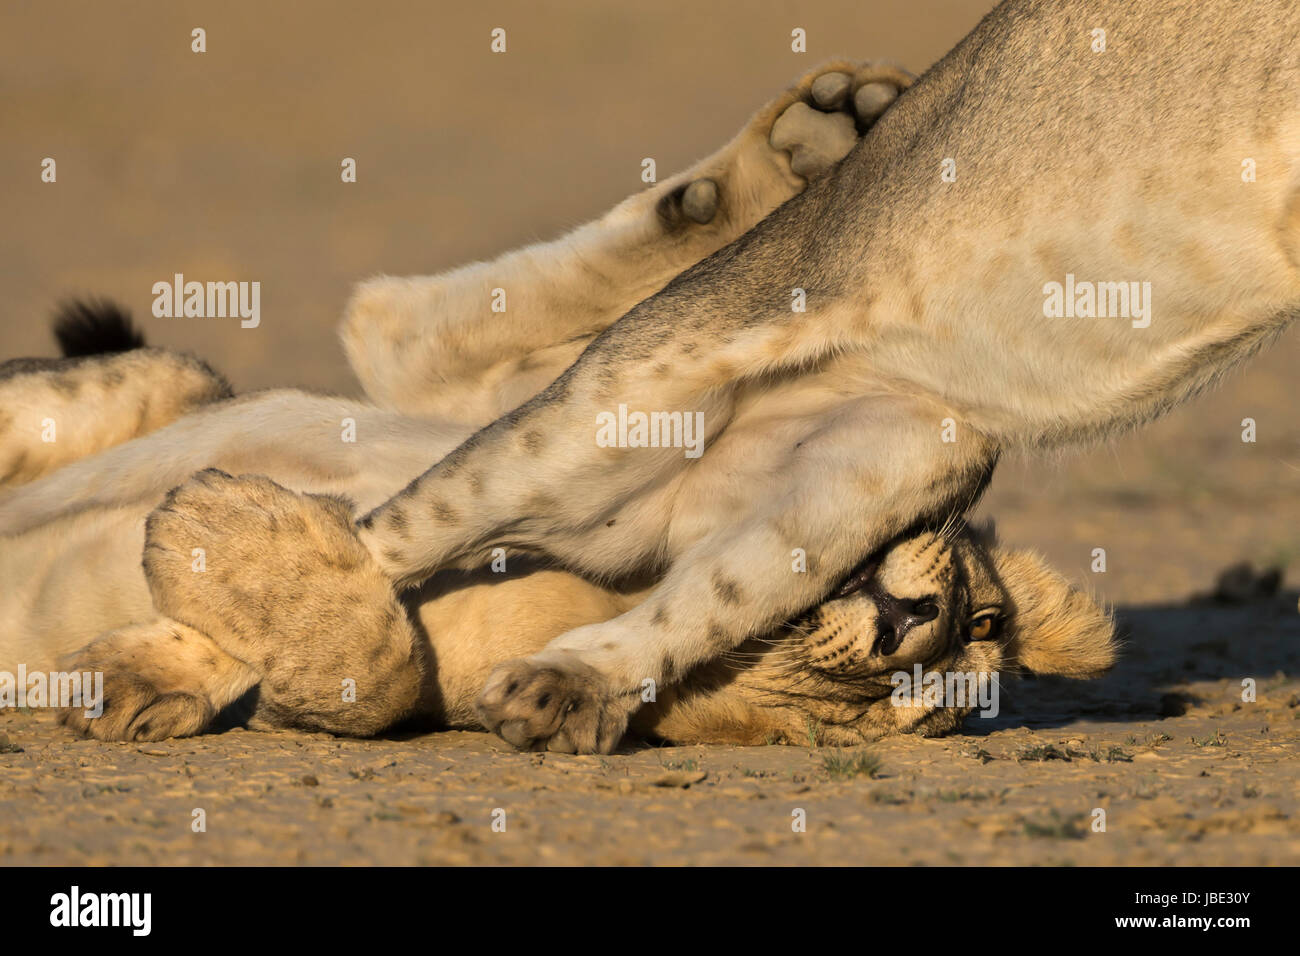 Jeunes lions (Panthera leo) de jouer, Kgalagadi transfrontier park, Northern Cape, Afrique du Sud, février 2017 Banque D'Images